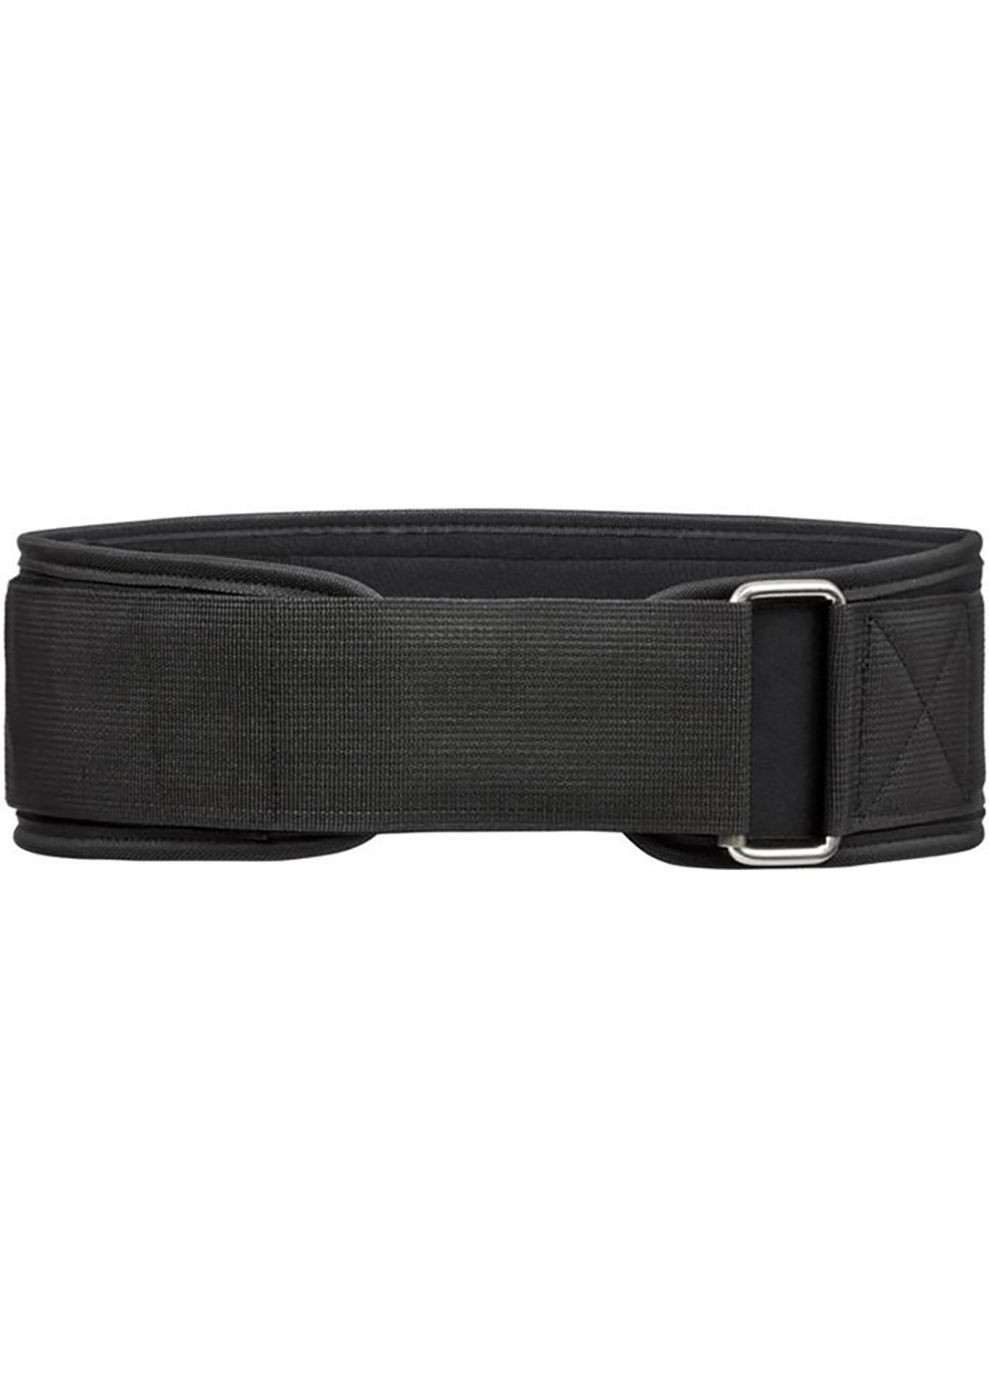 Пояс для важкої атлетики Essential Weightlifting Belt чорний Уні adidas (268833036)